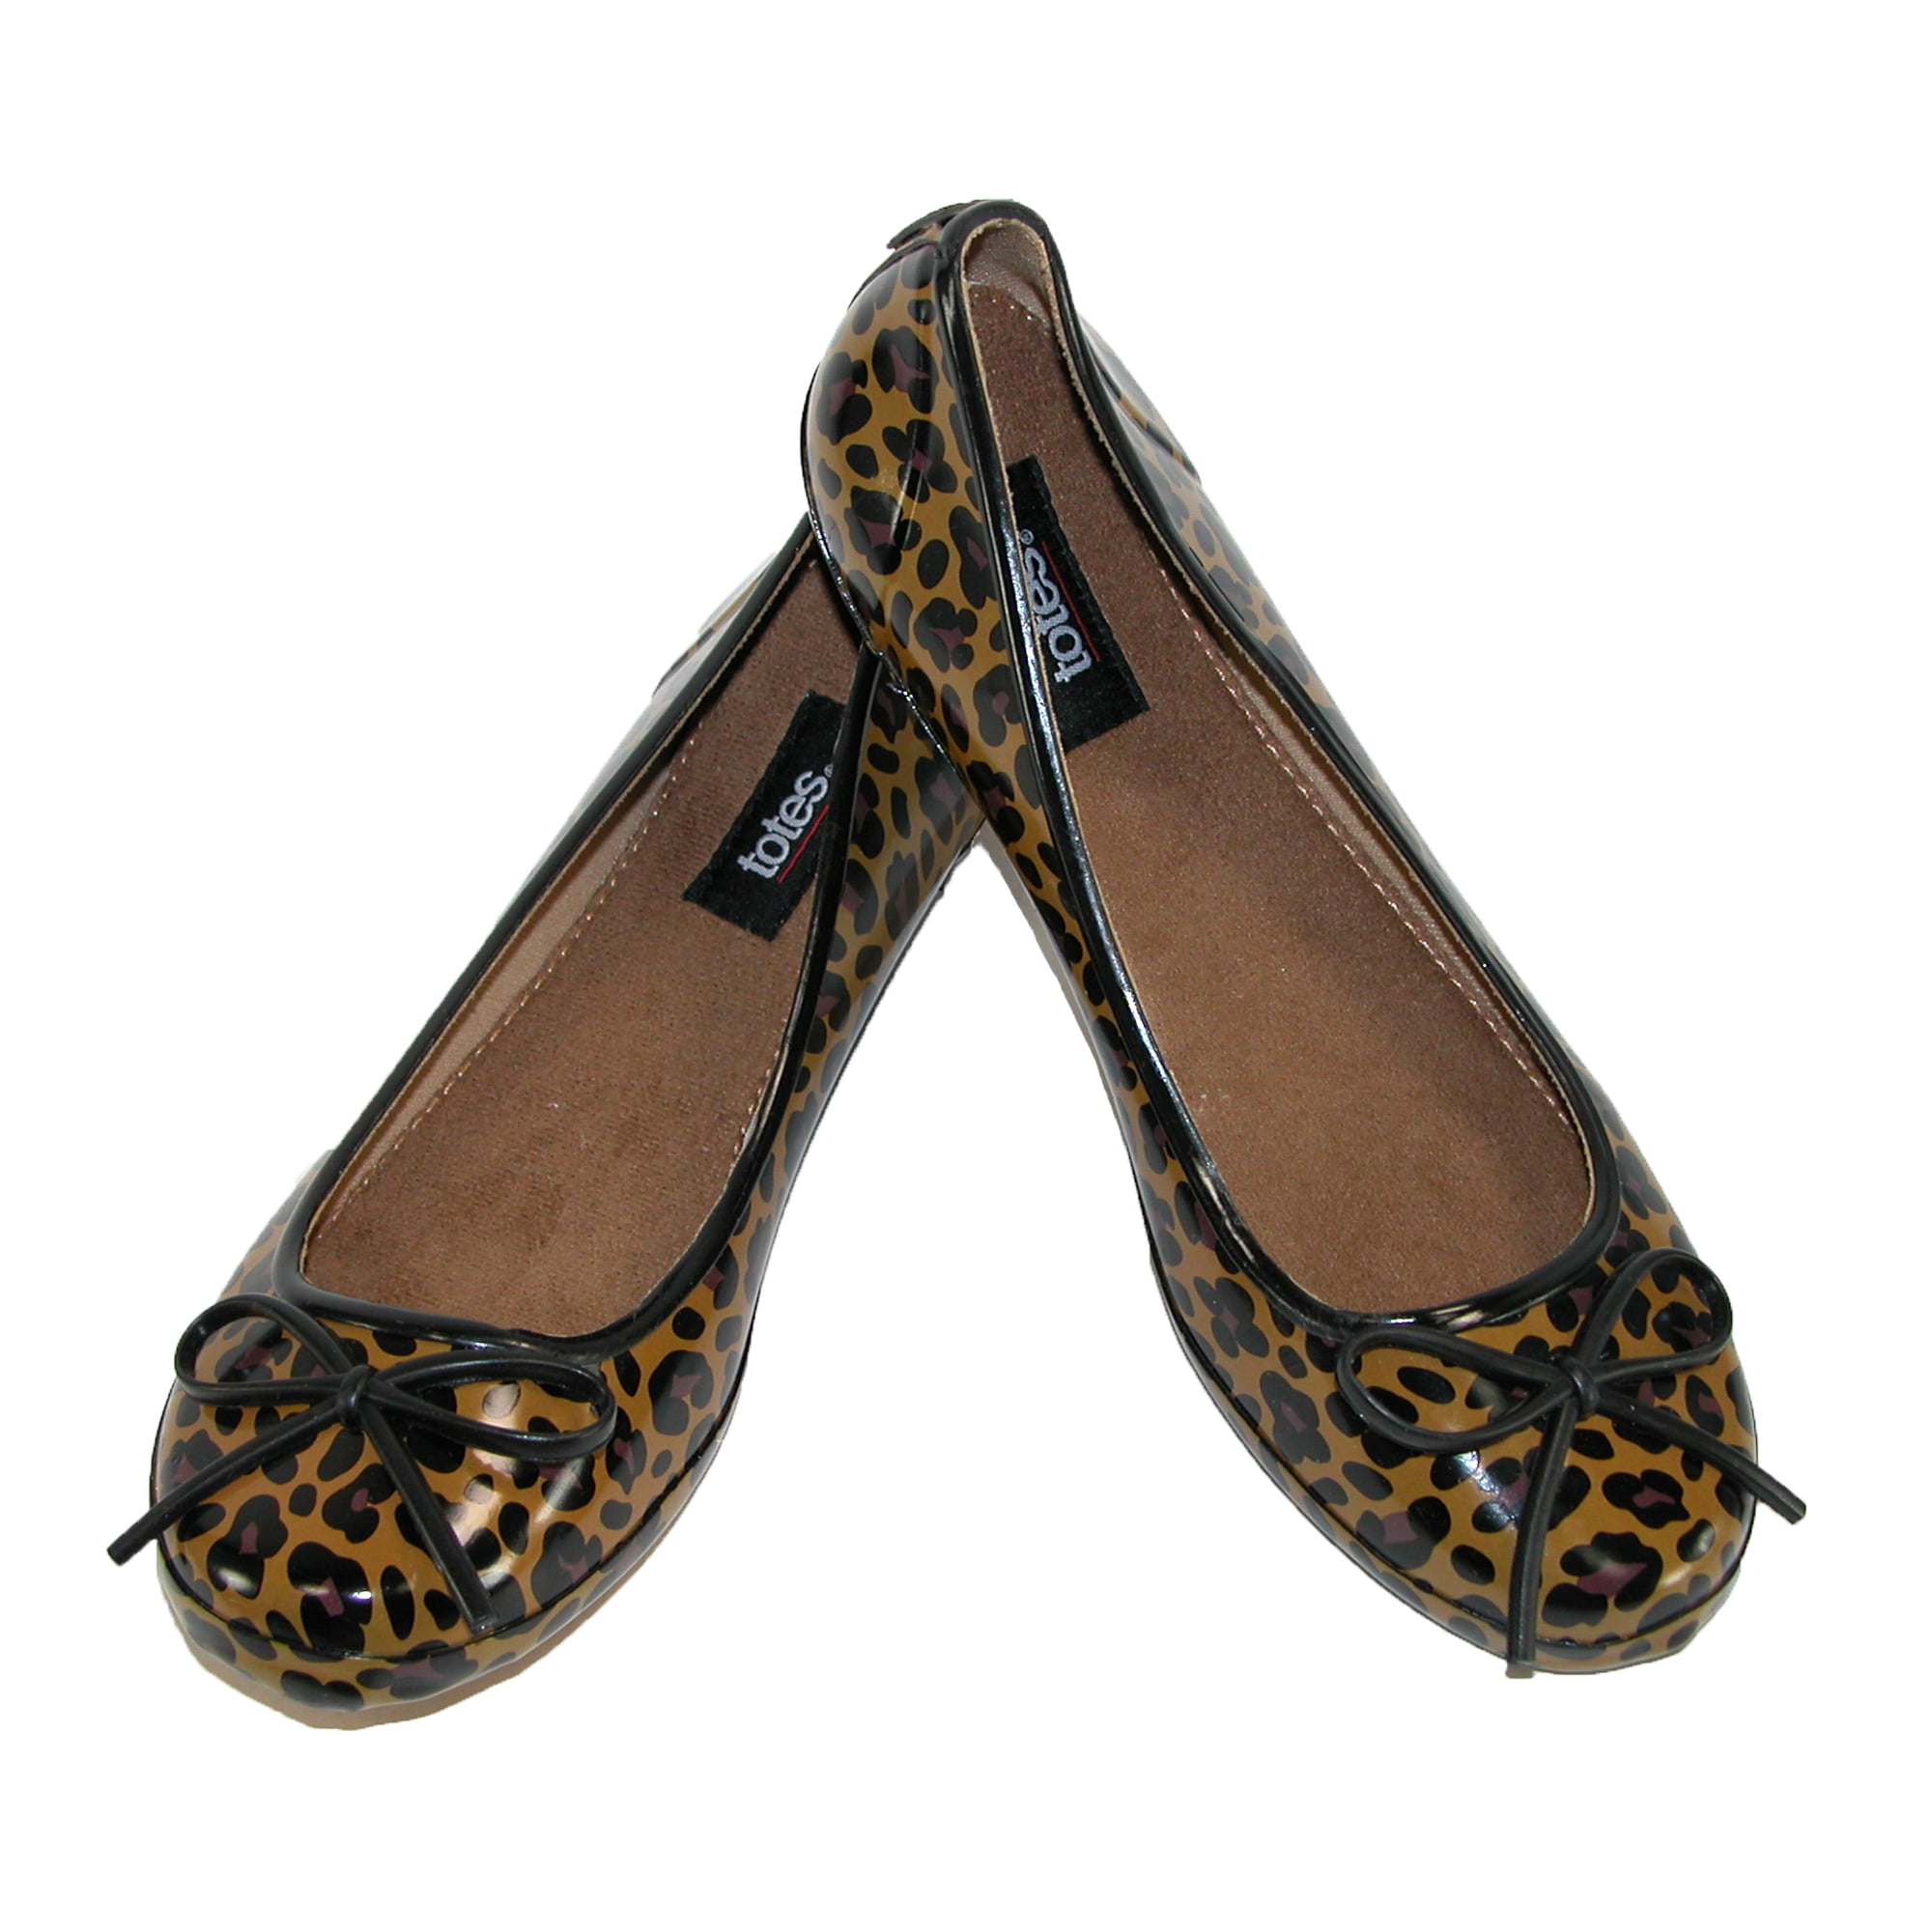 leopard print shoes size 11